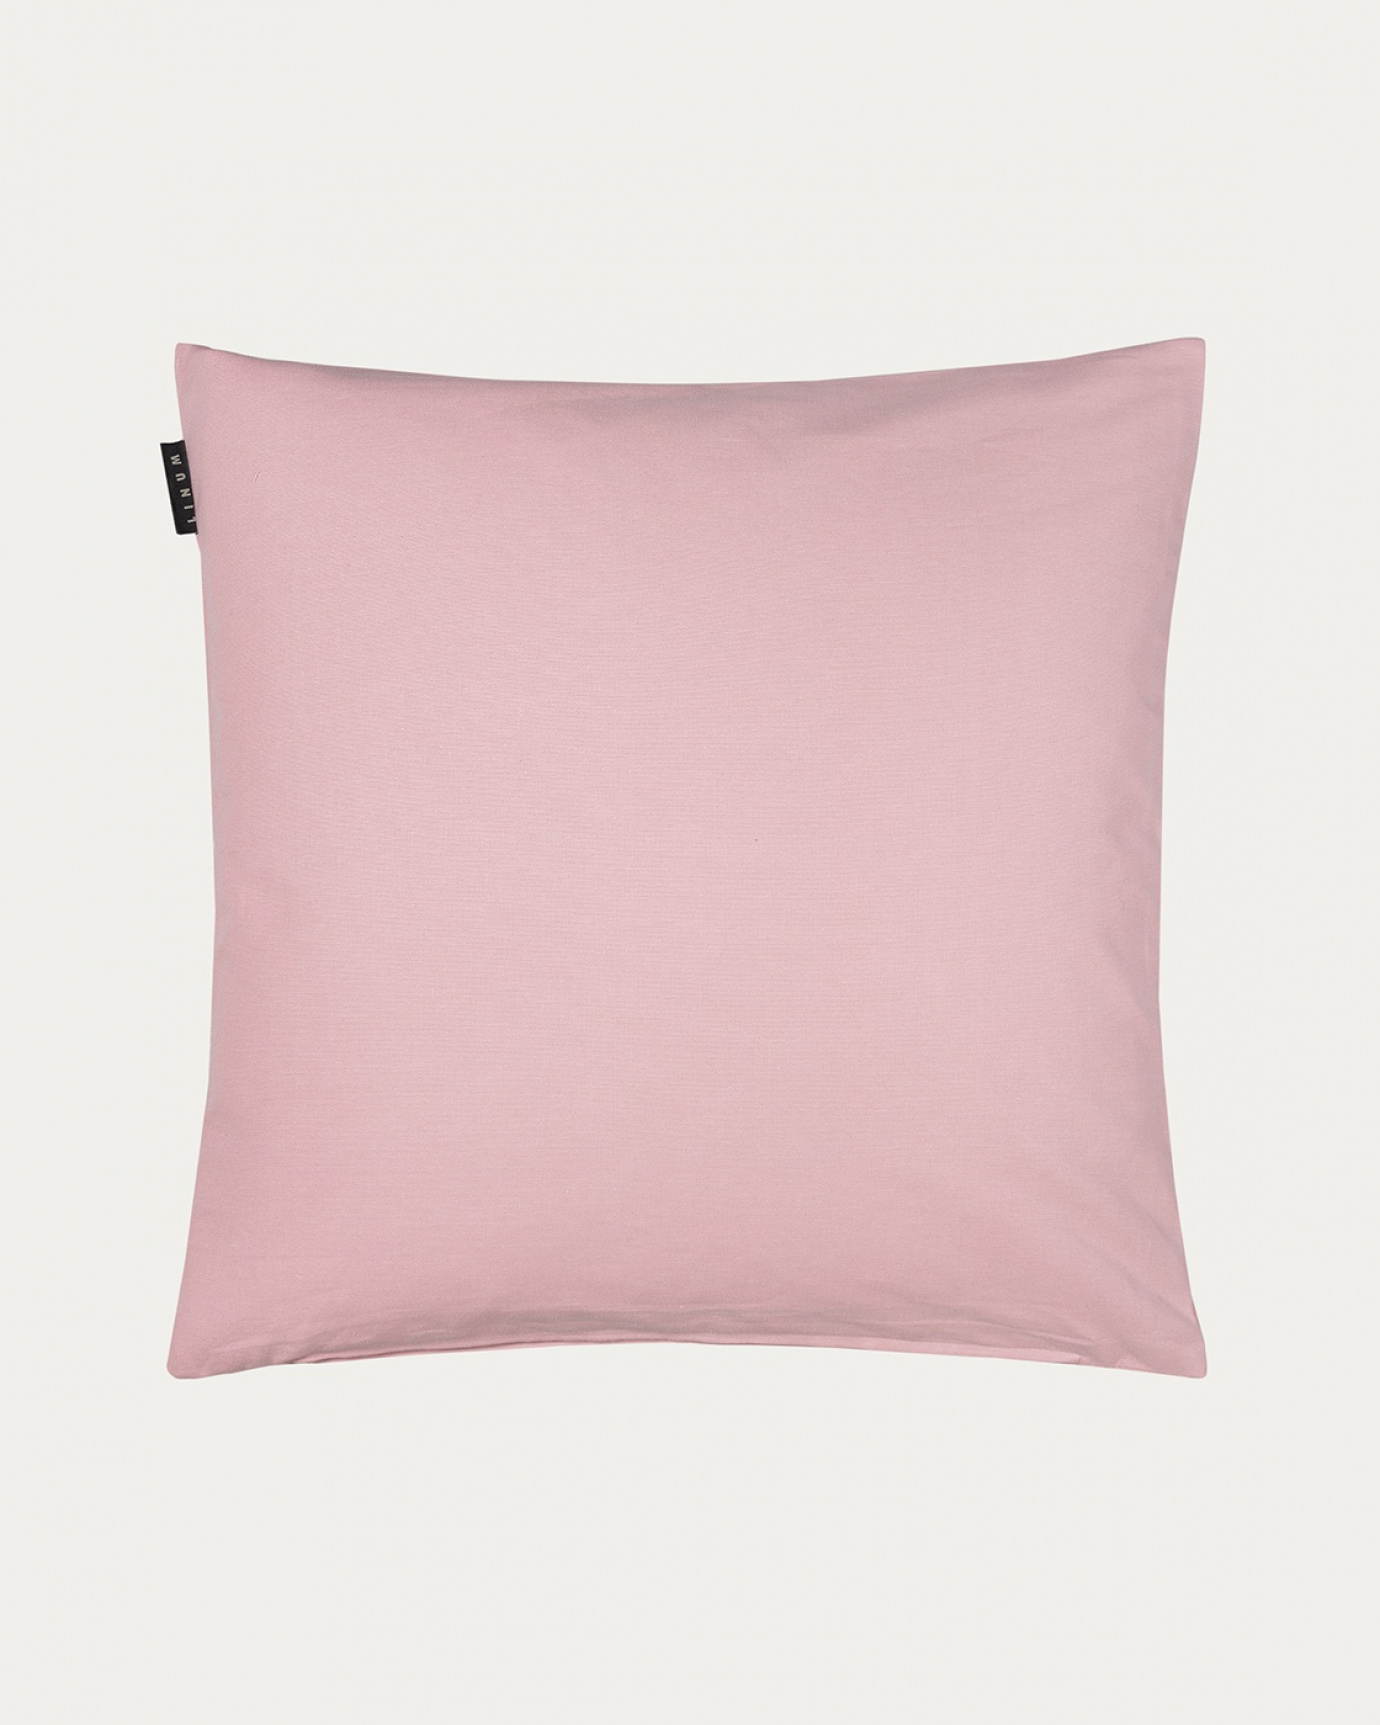 Produktbild dammig rosa ANNABELL kuddfodral av mjuk bomull från LINUM DESIGN. Storlek 50x50 cm.